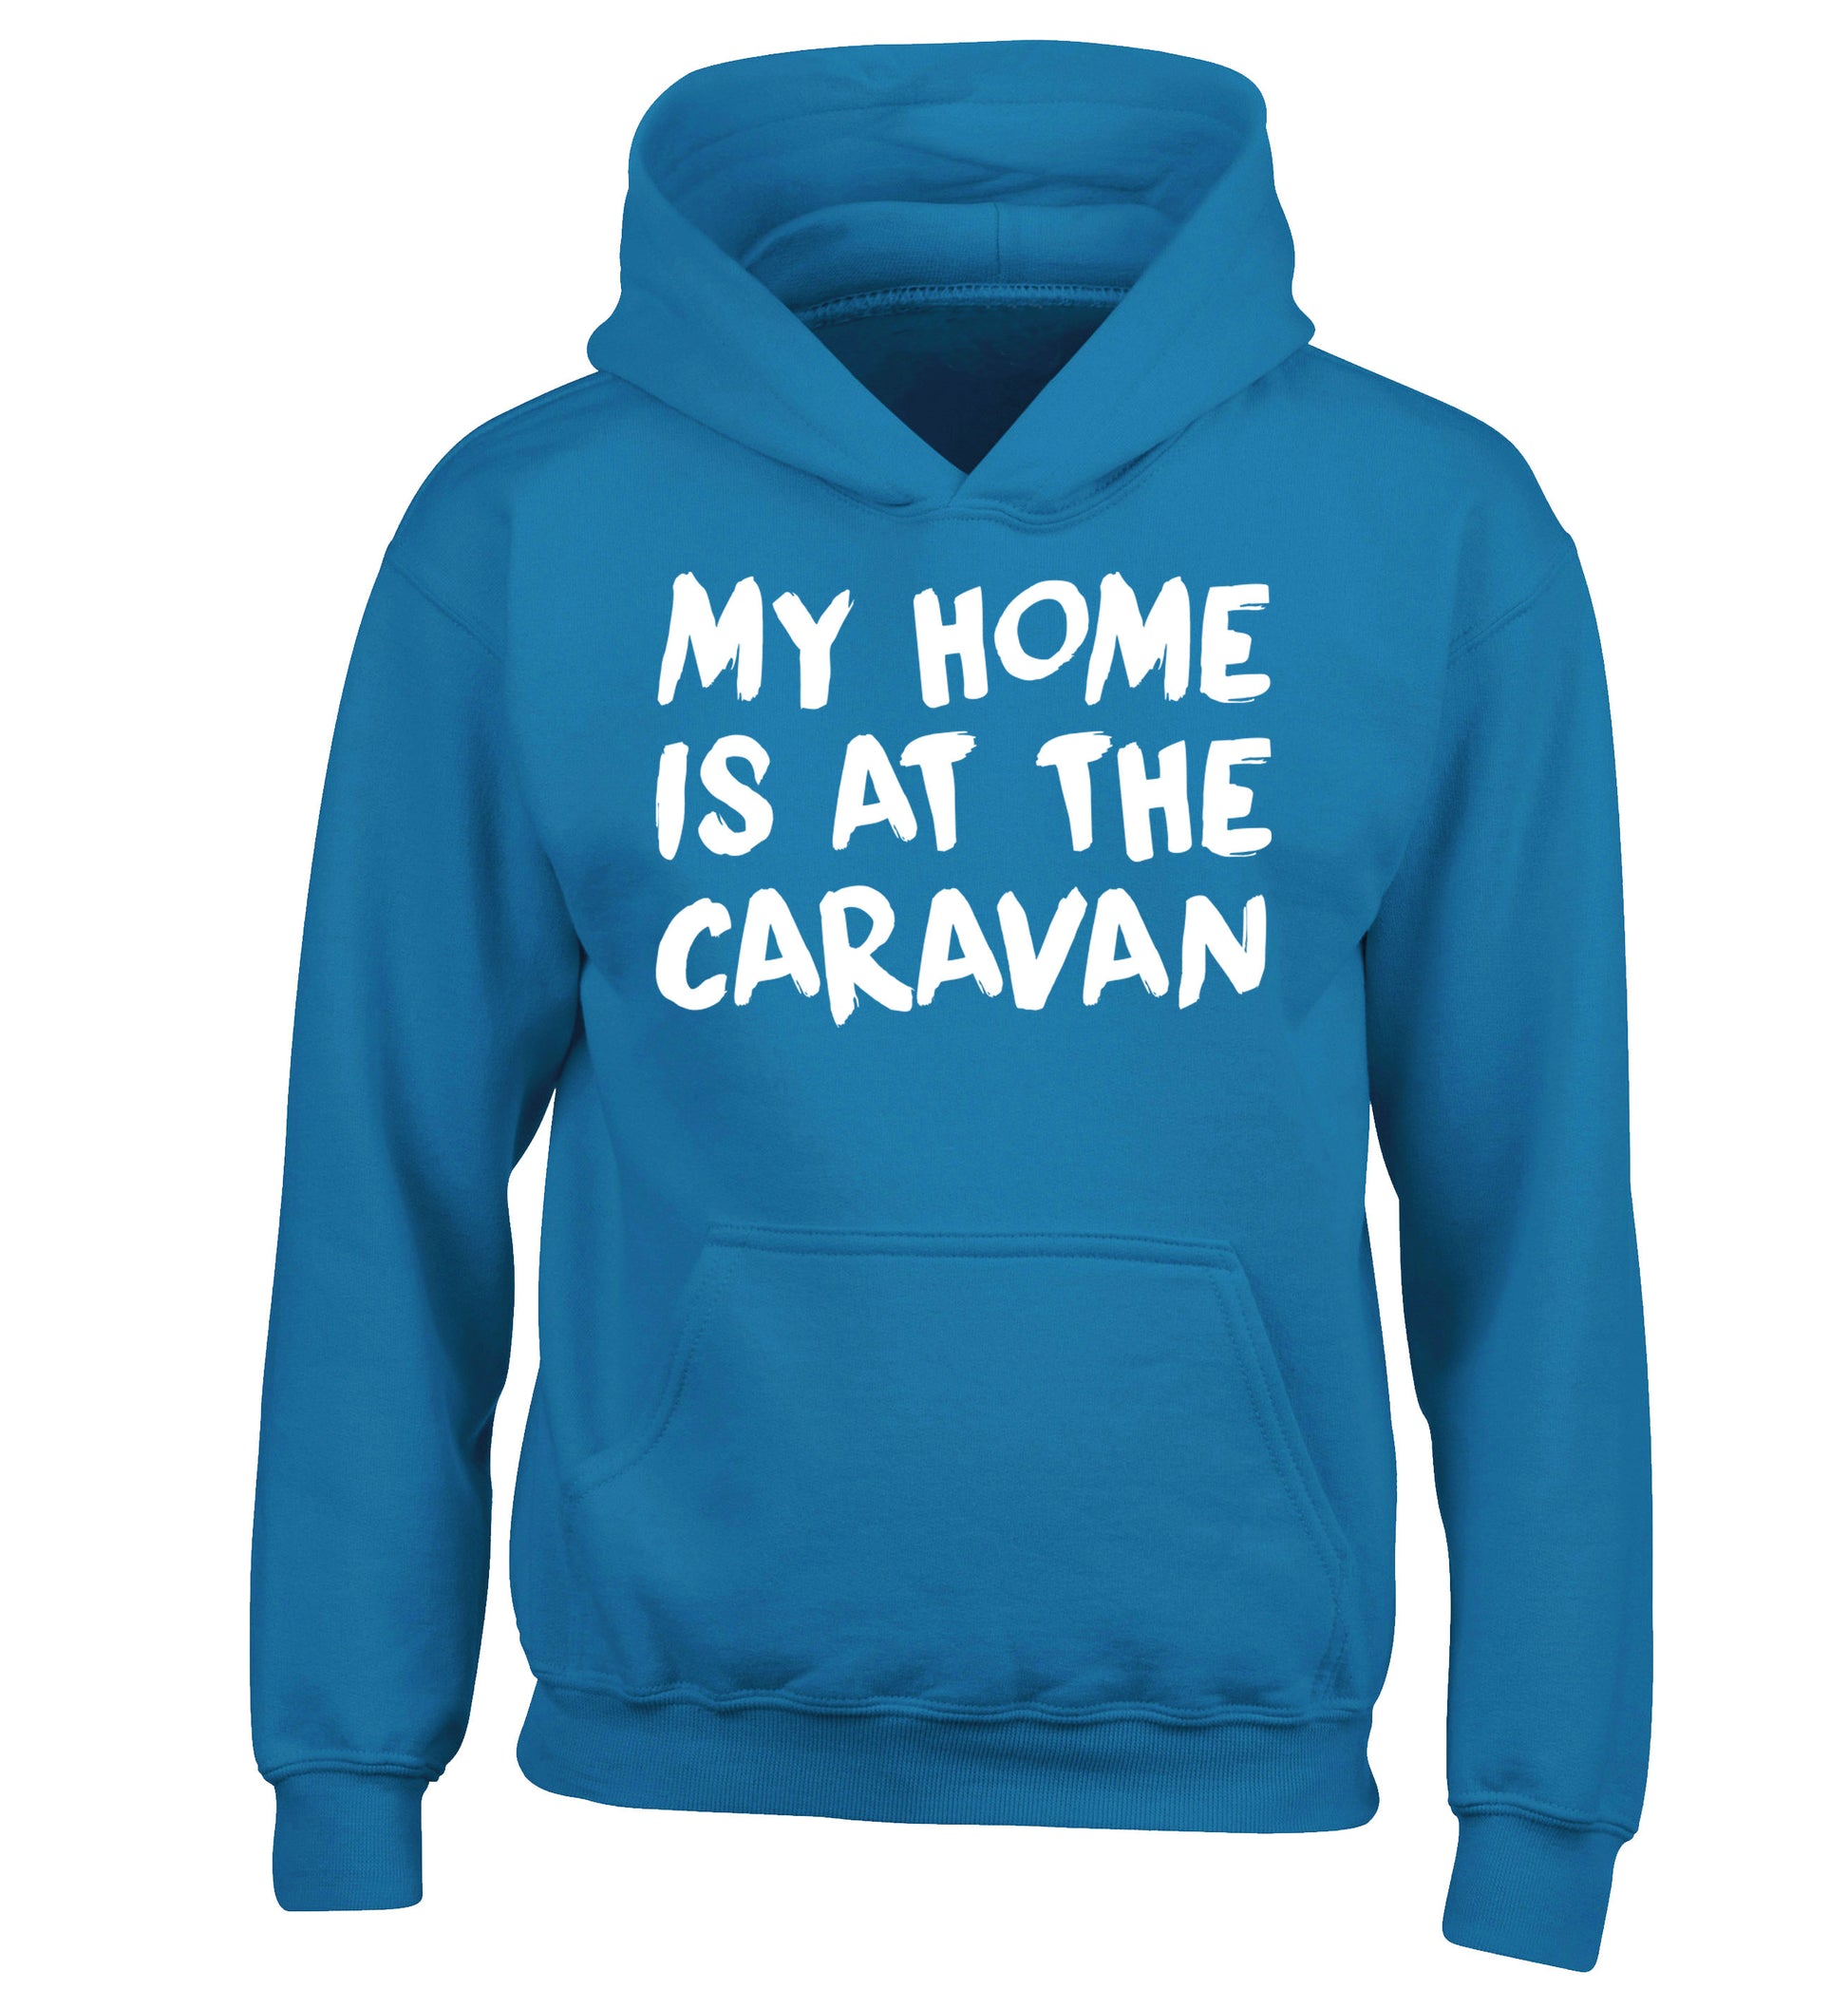 My home is at the caravan children's blue hoodie 12-14 Years